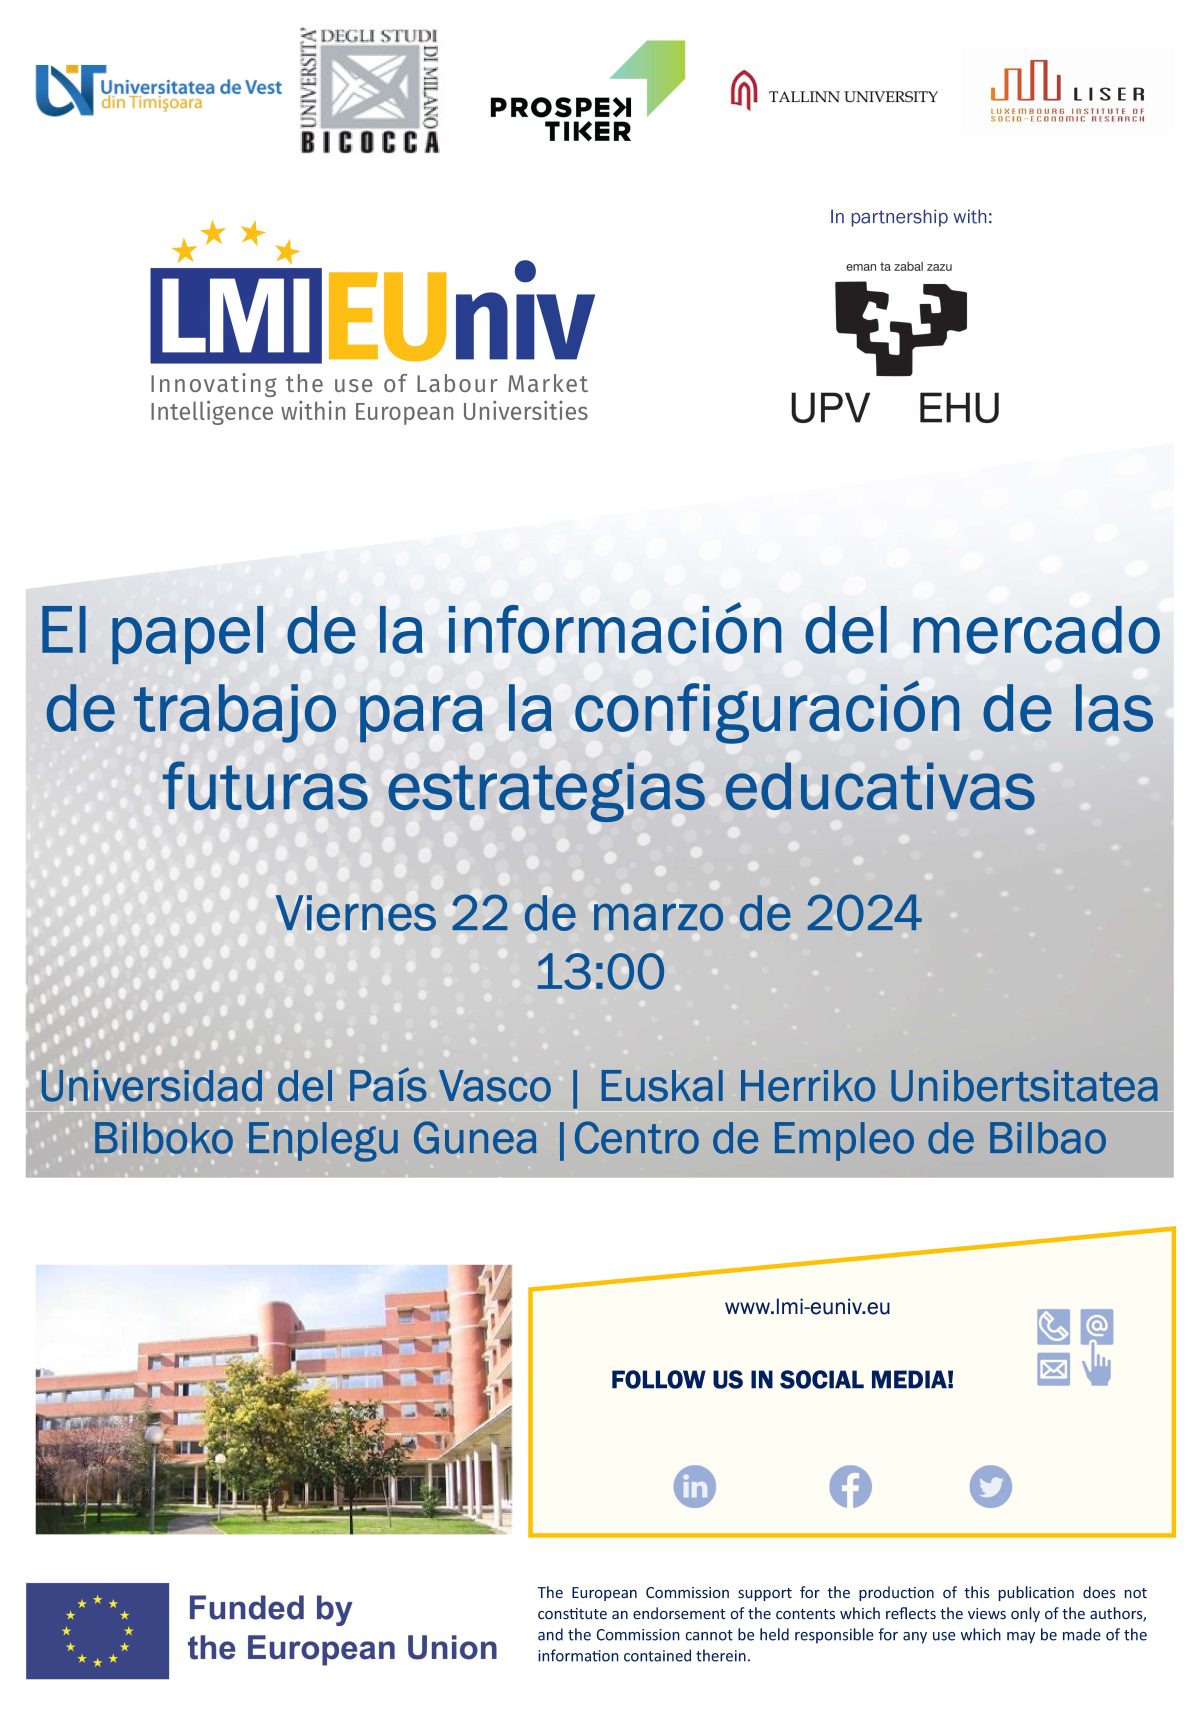 Multiplier Event in Bilbao